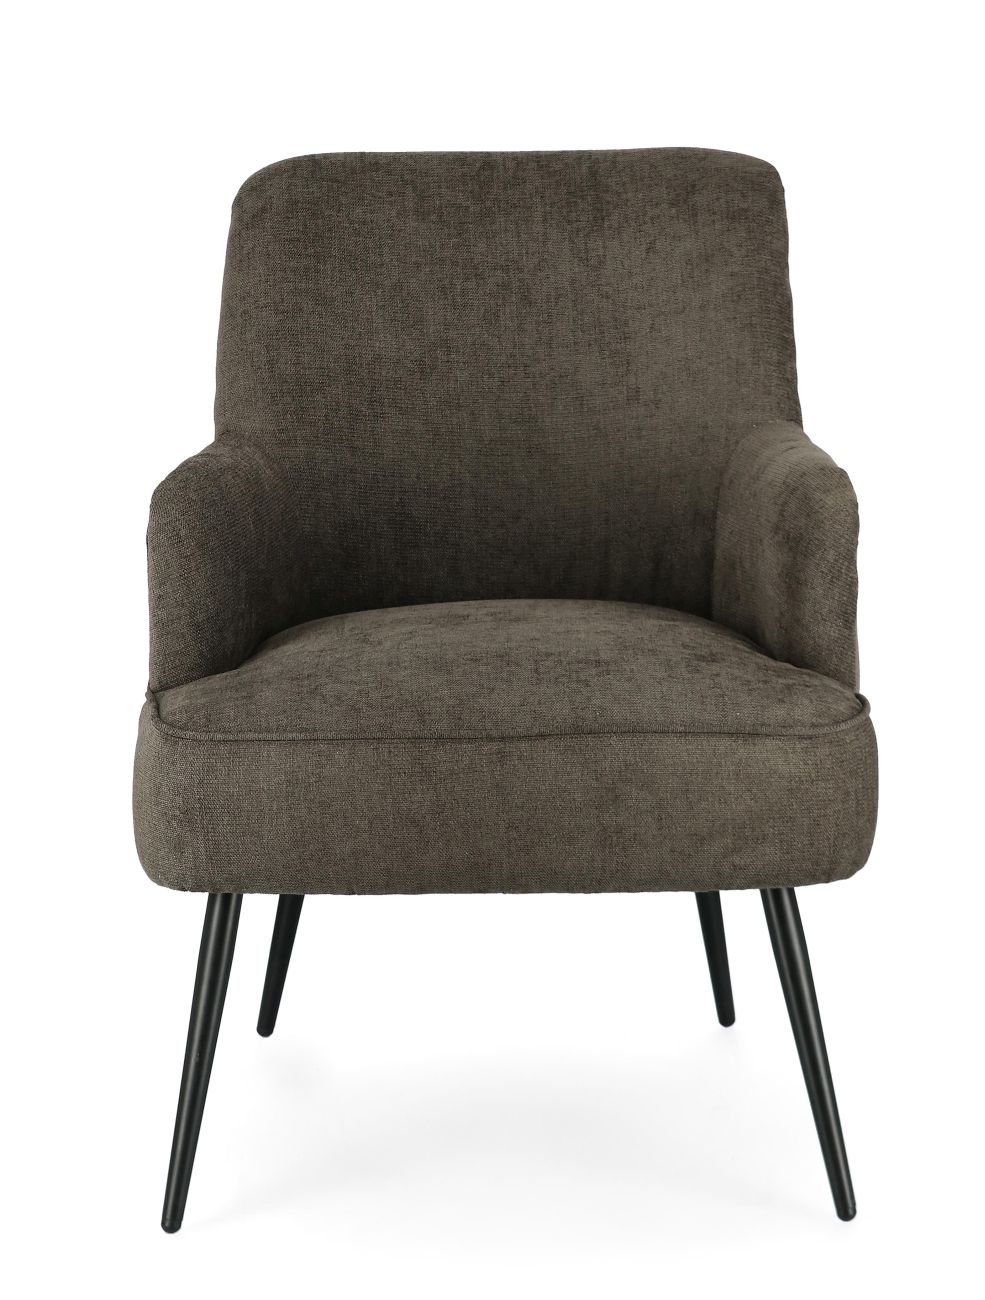 Der Sessel Ernestine überzeugt mit seinem modernen Stil. Gefertigt wurde er aus einem Stoff-Bezug, welcher einen dunkelbraunen Farbton besitzt. Das Gestell ist aus Metall und hat eine schwarze Farbe. Der Sessel verfügt über eine Armlehne.